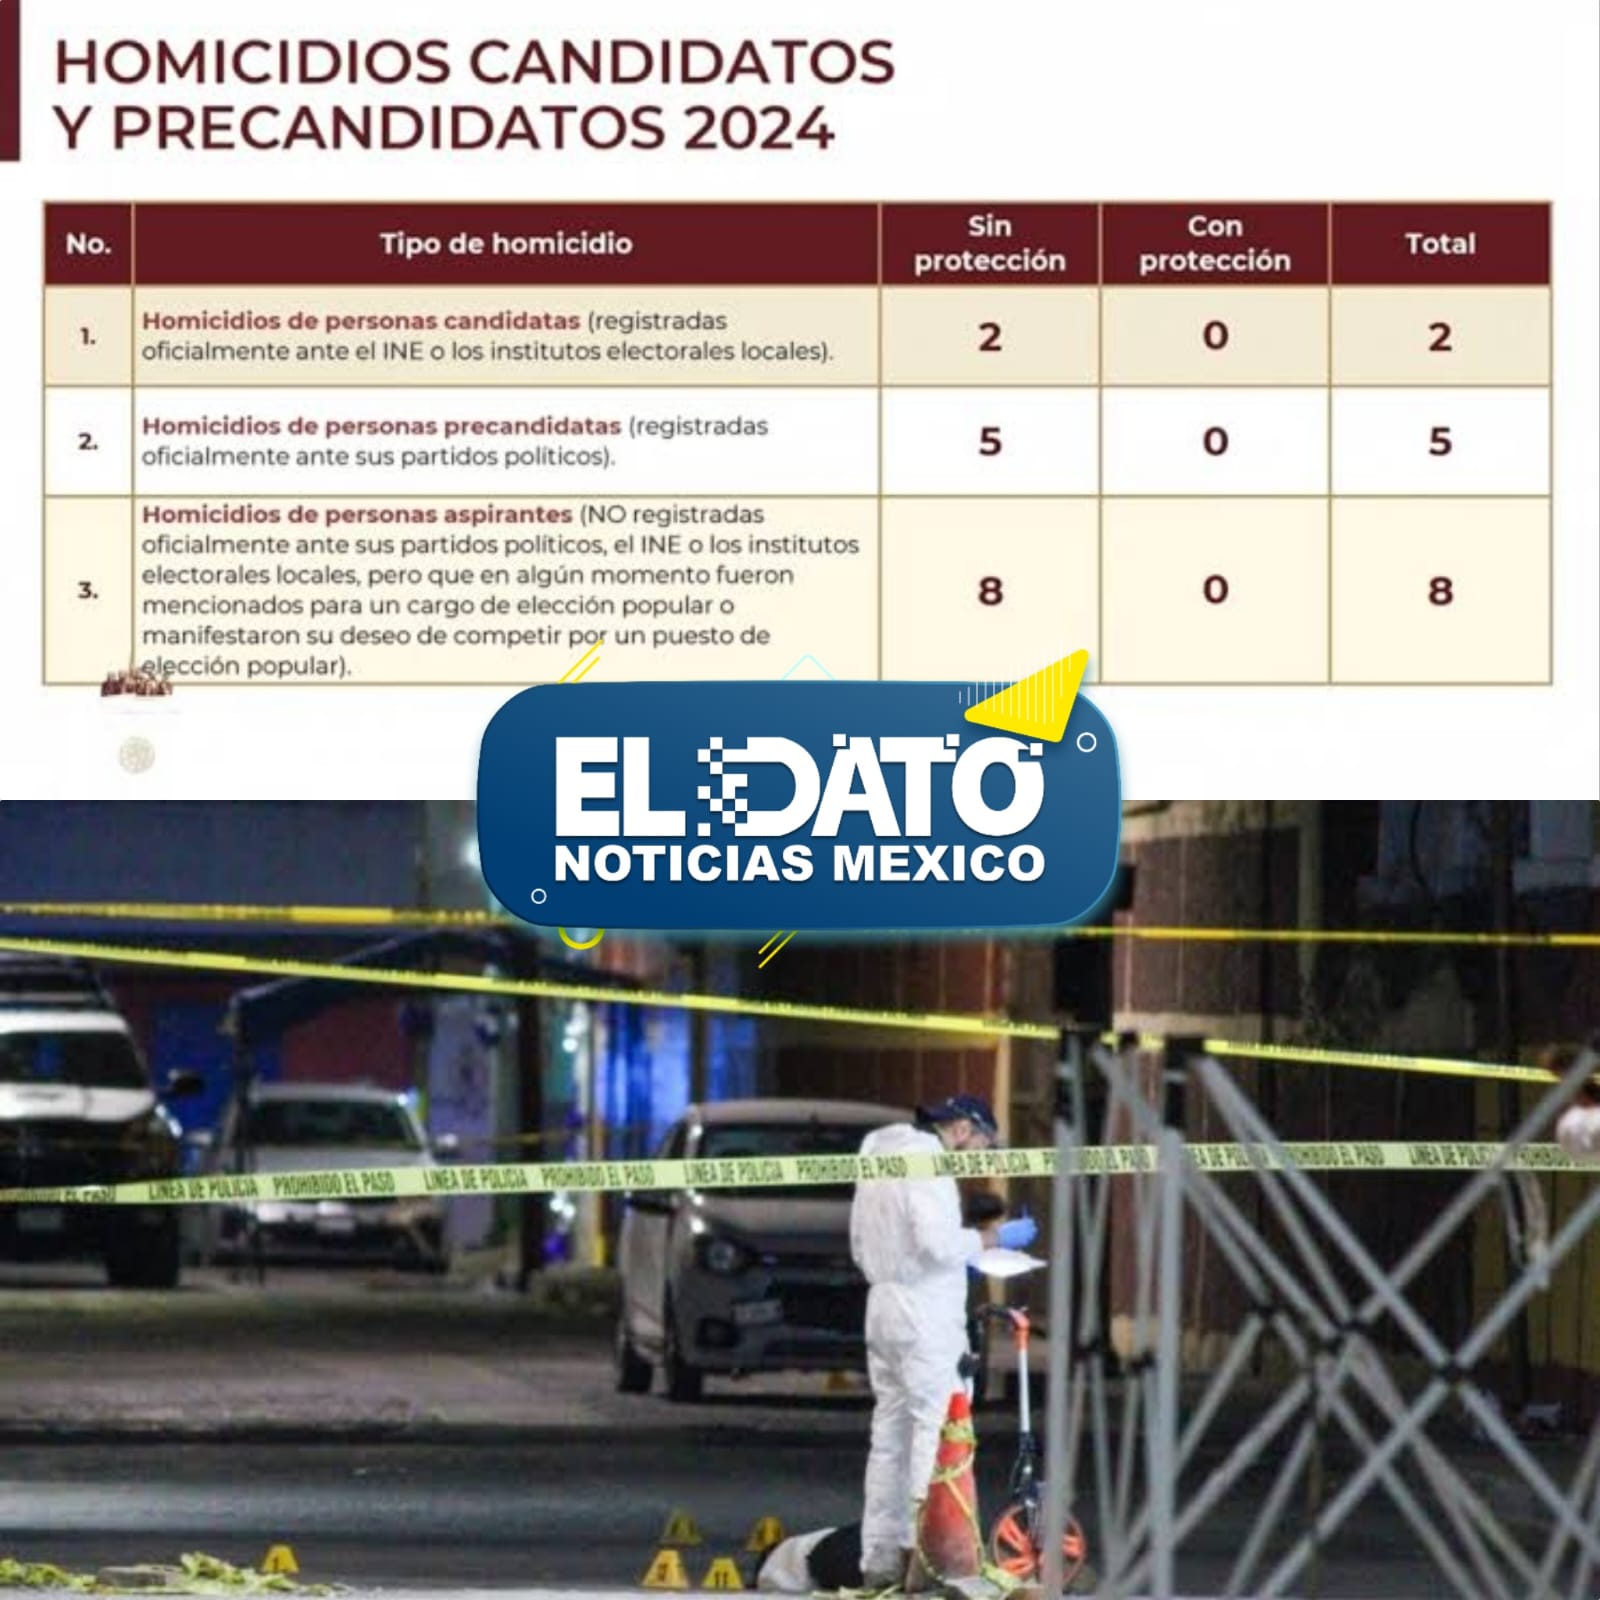 VIOLENCIA POLÍTICA EN MÉXICO: 15 ASPIRANTES A CARGOS ELECTIVOS ASESINADOS EN LO QUE VA DEL 2024